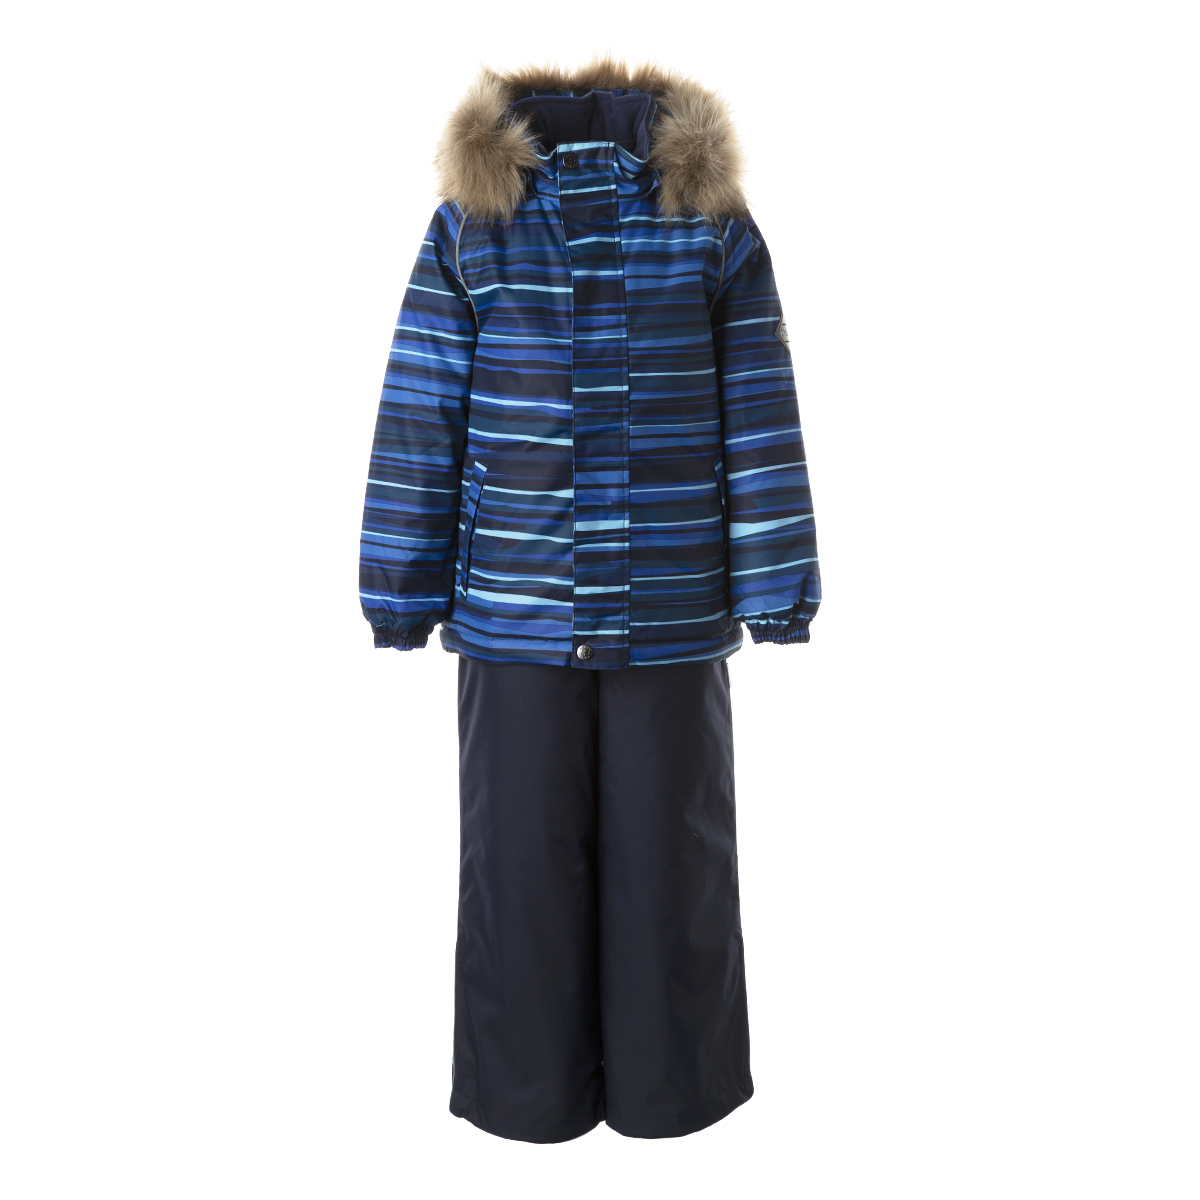 Комплект верхней одежды детский Huppa WINTER цв. синяя полоска/темно-синий р. 104